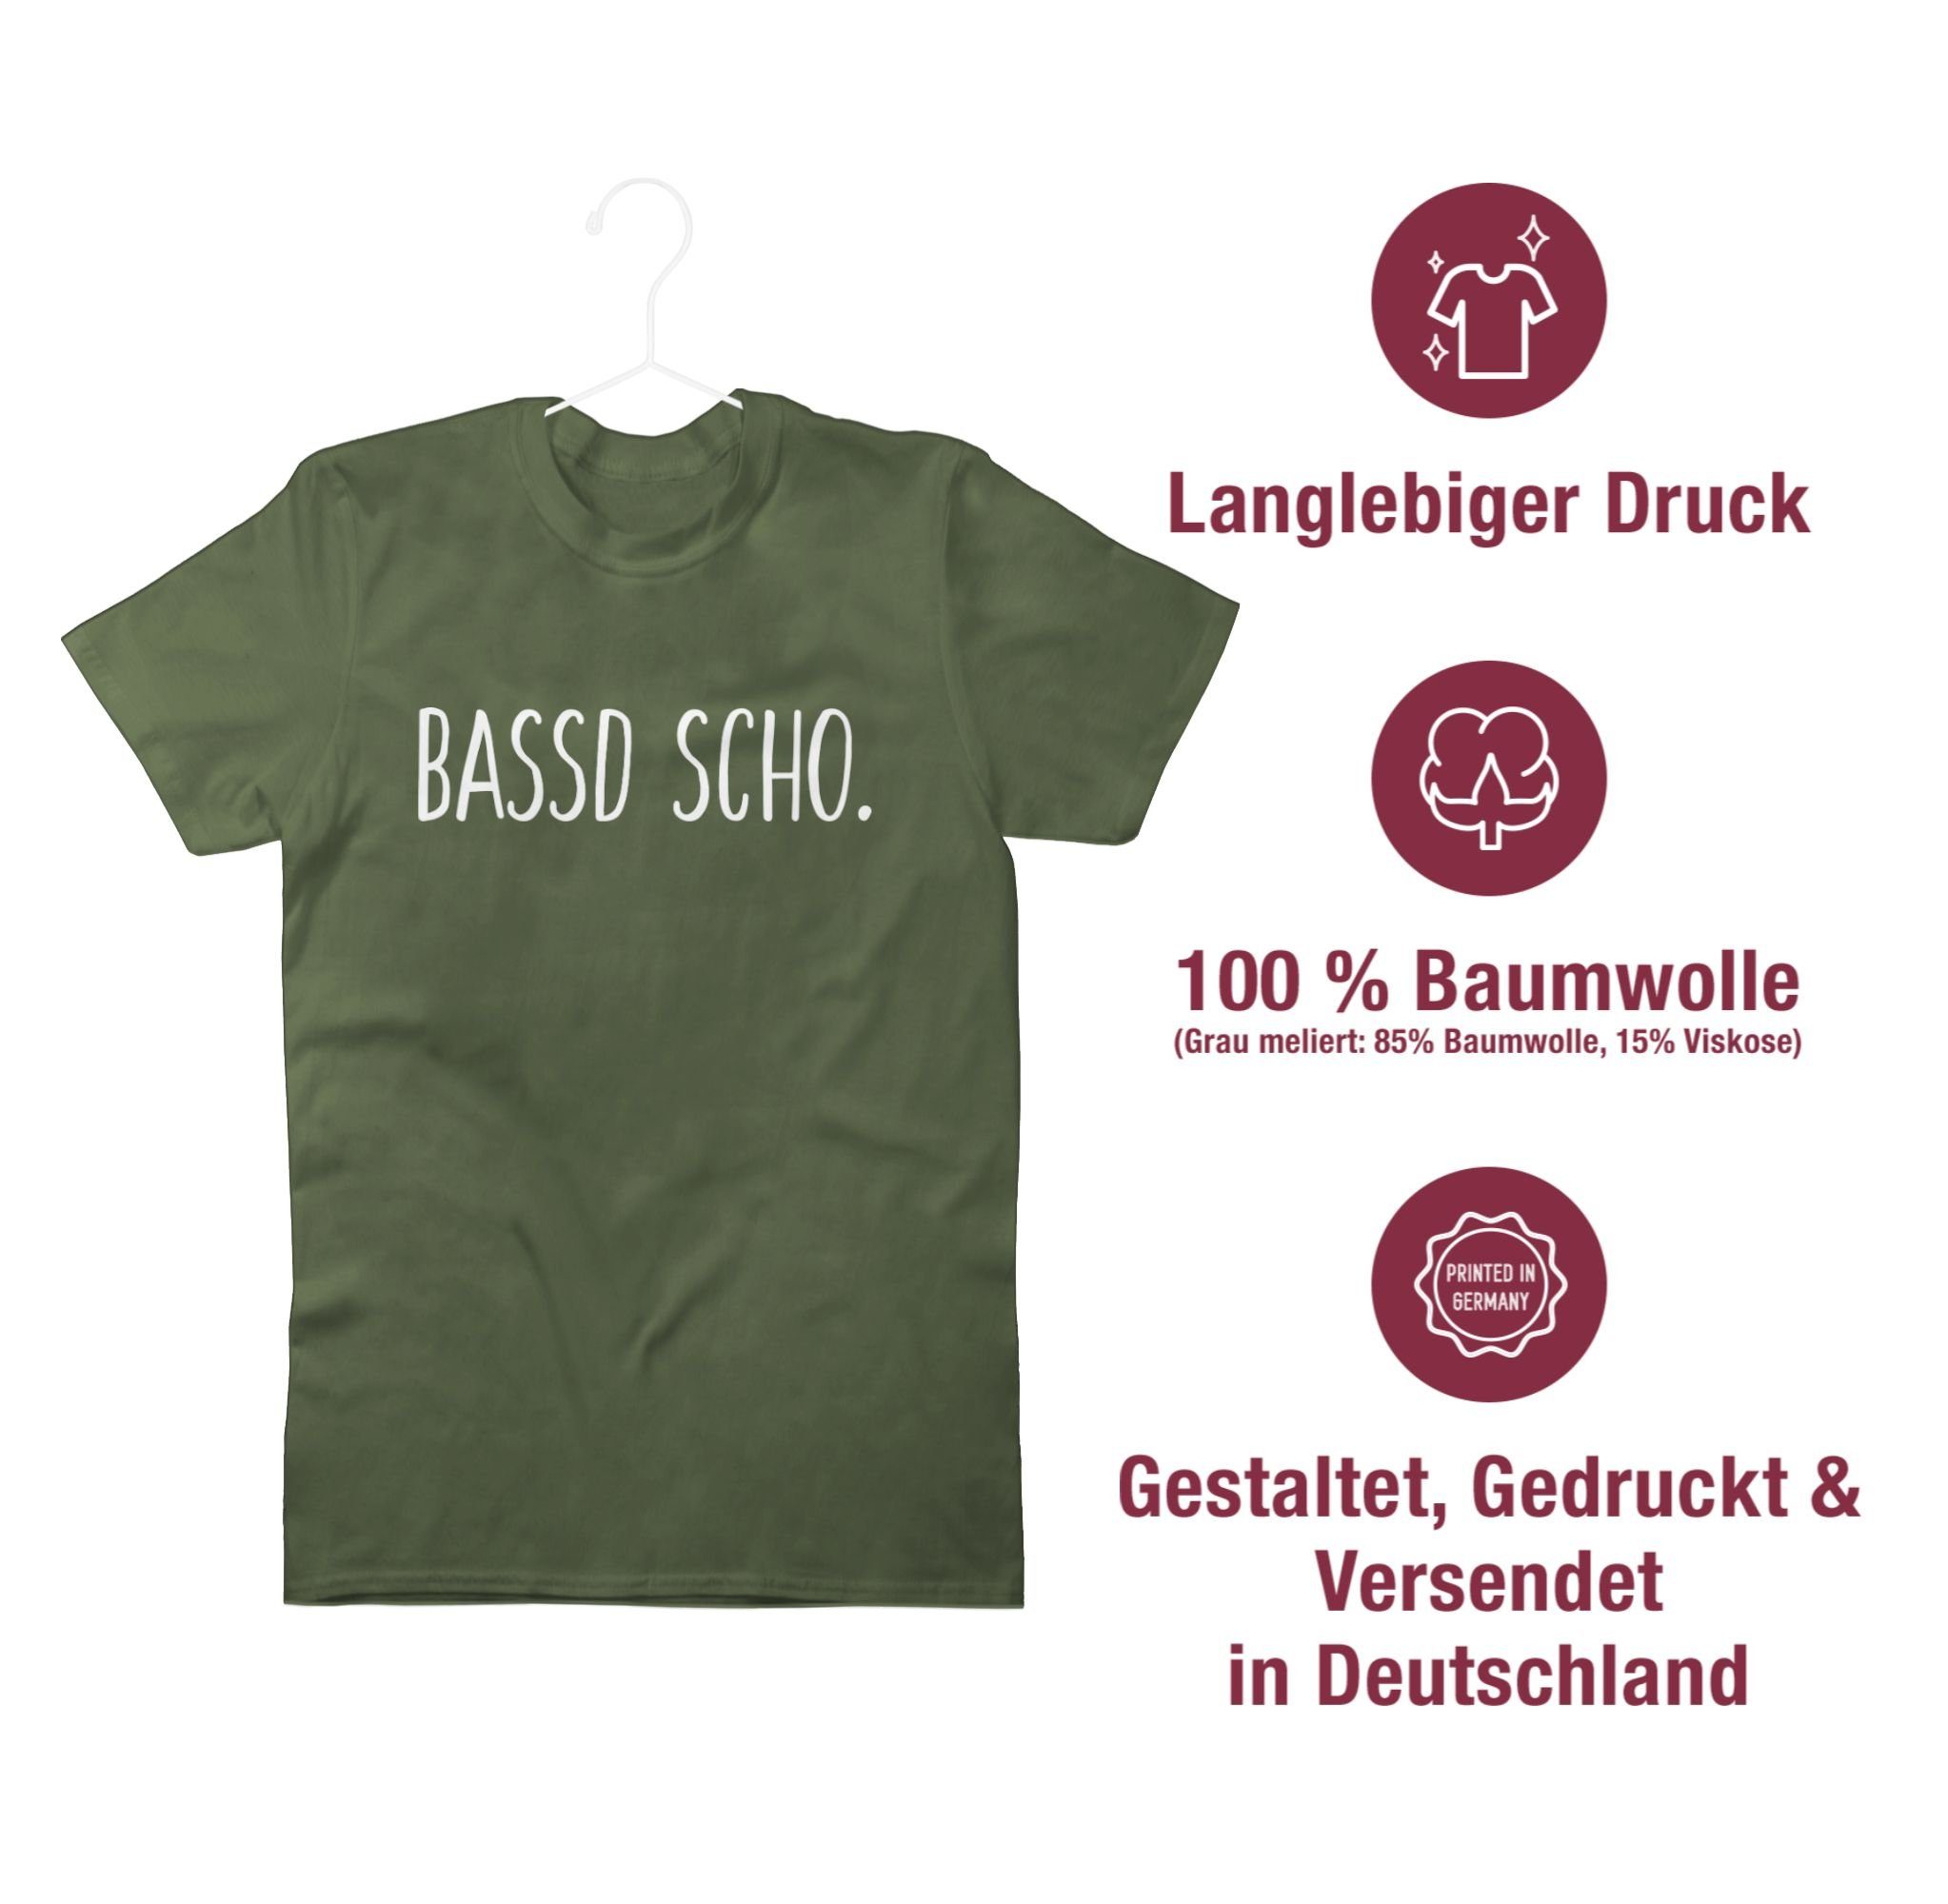 scho Grün T-Shirt Army Bassd 2 Statement Sprüche Shirtracer